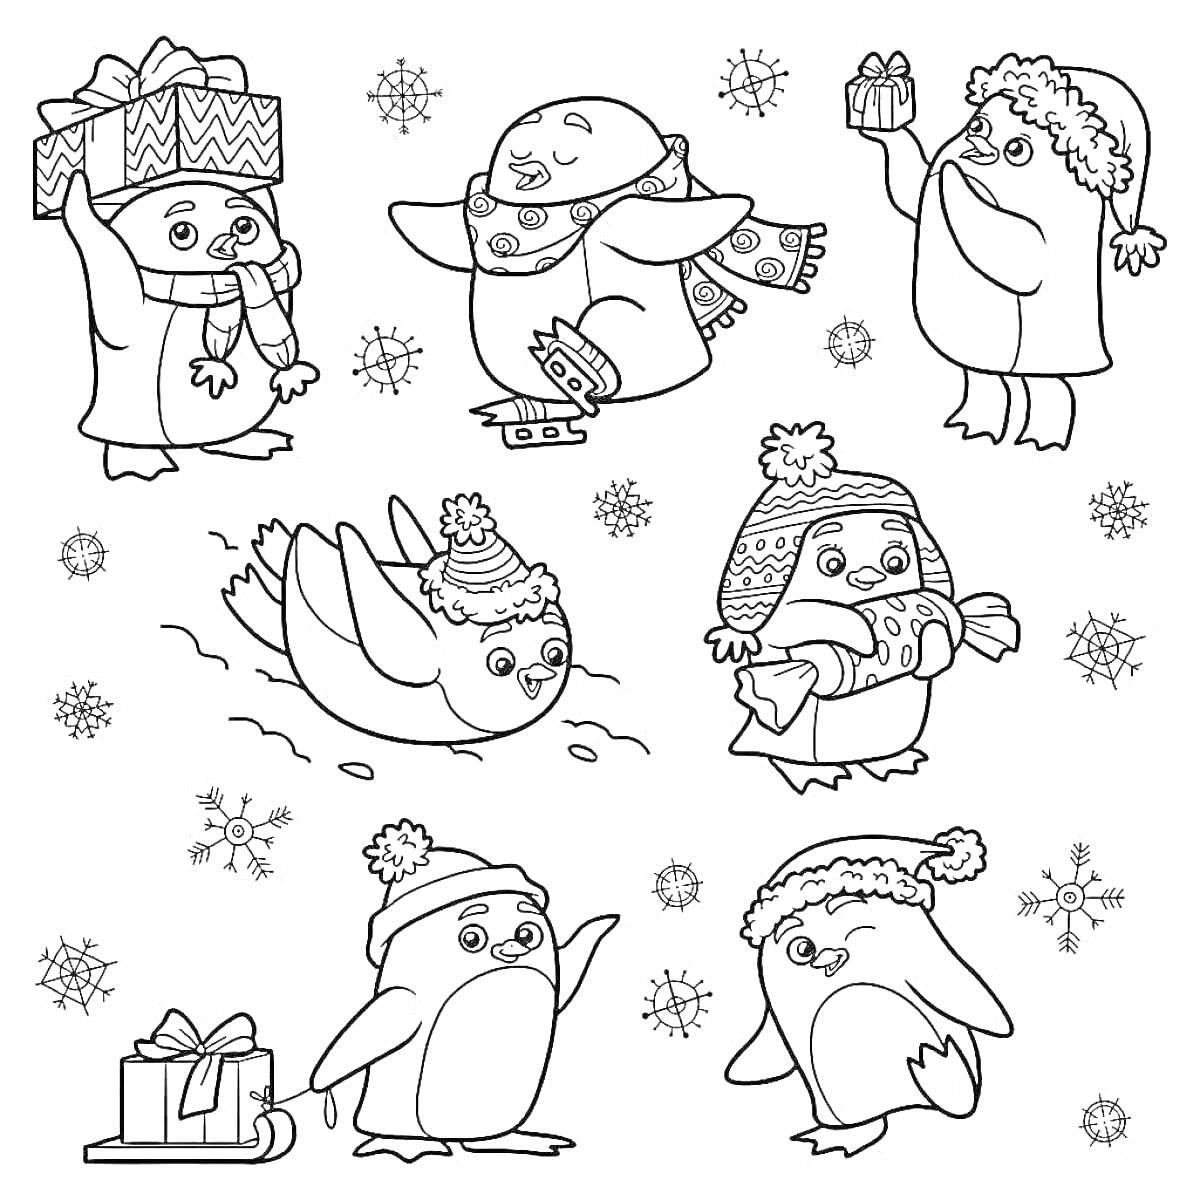 РаскраскаПингвины с новогодними подарками, на коньках и в шапках среди снежинок